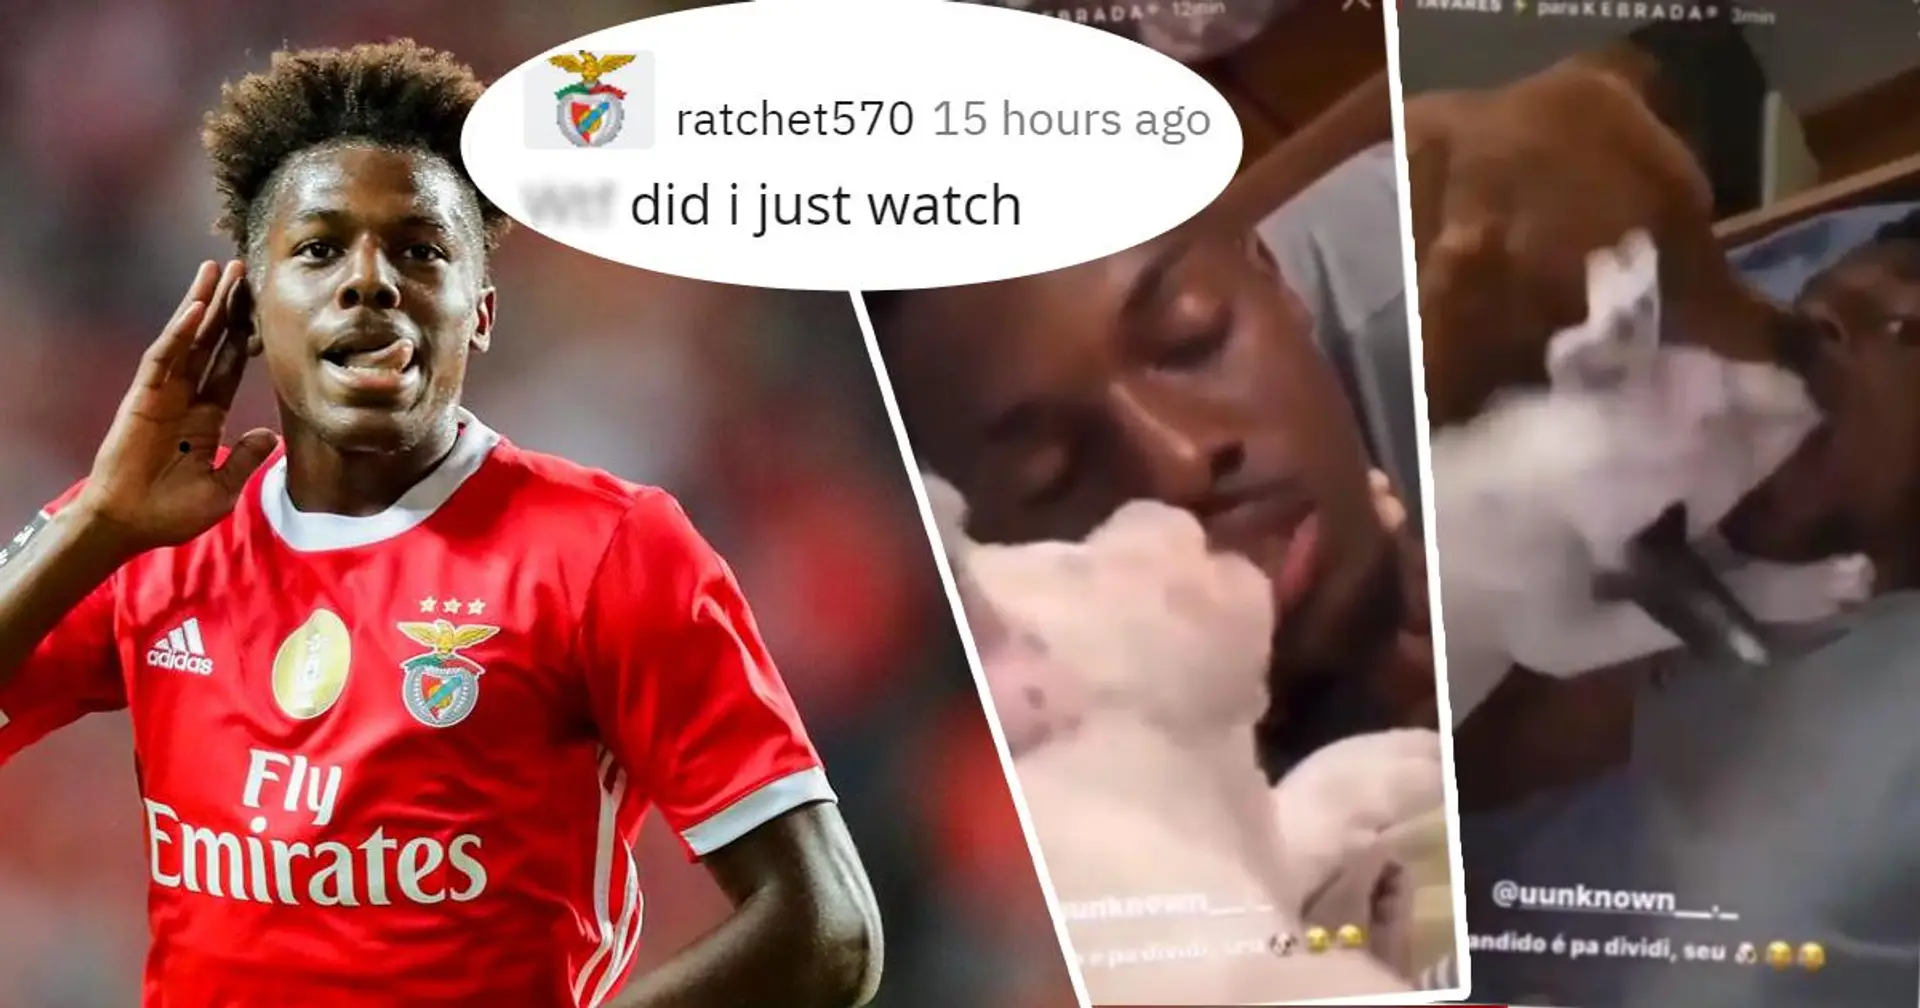 Benfica-Star lässt Hunde die Innenseite seines Mundes lecken - er teilt diese Clips auf Instagram